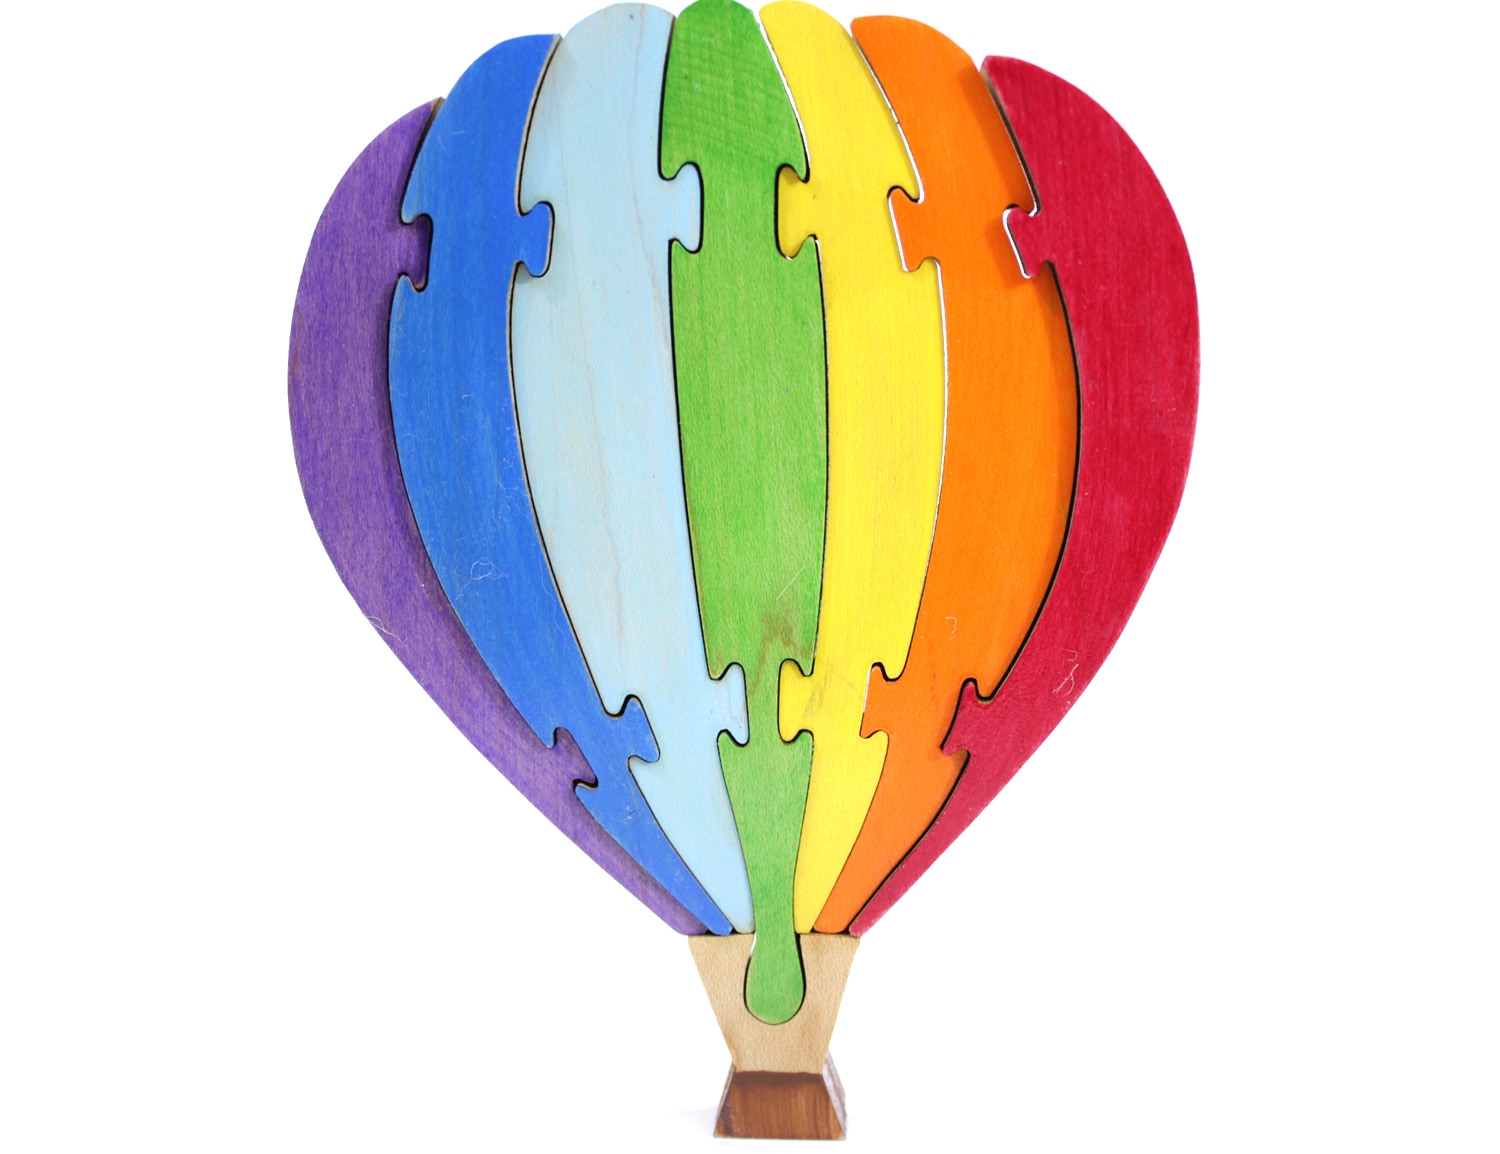 Hot Air Balloon Puzzle - Standing Rainbow Hot Air Balloon